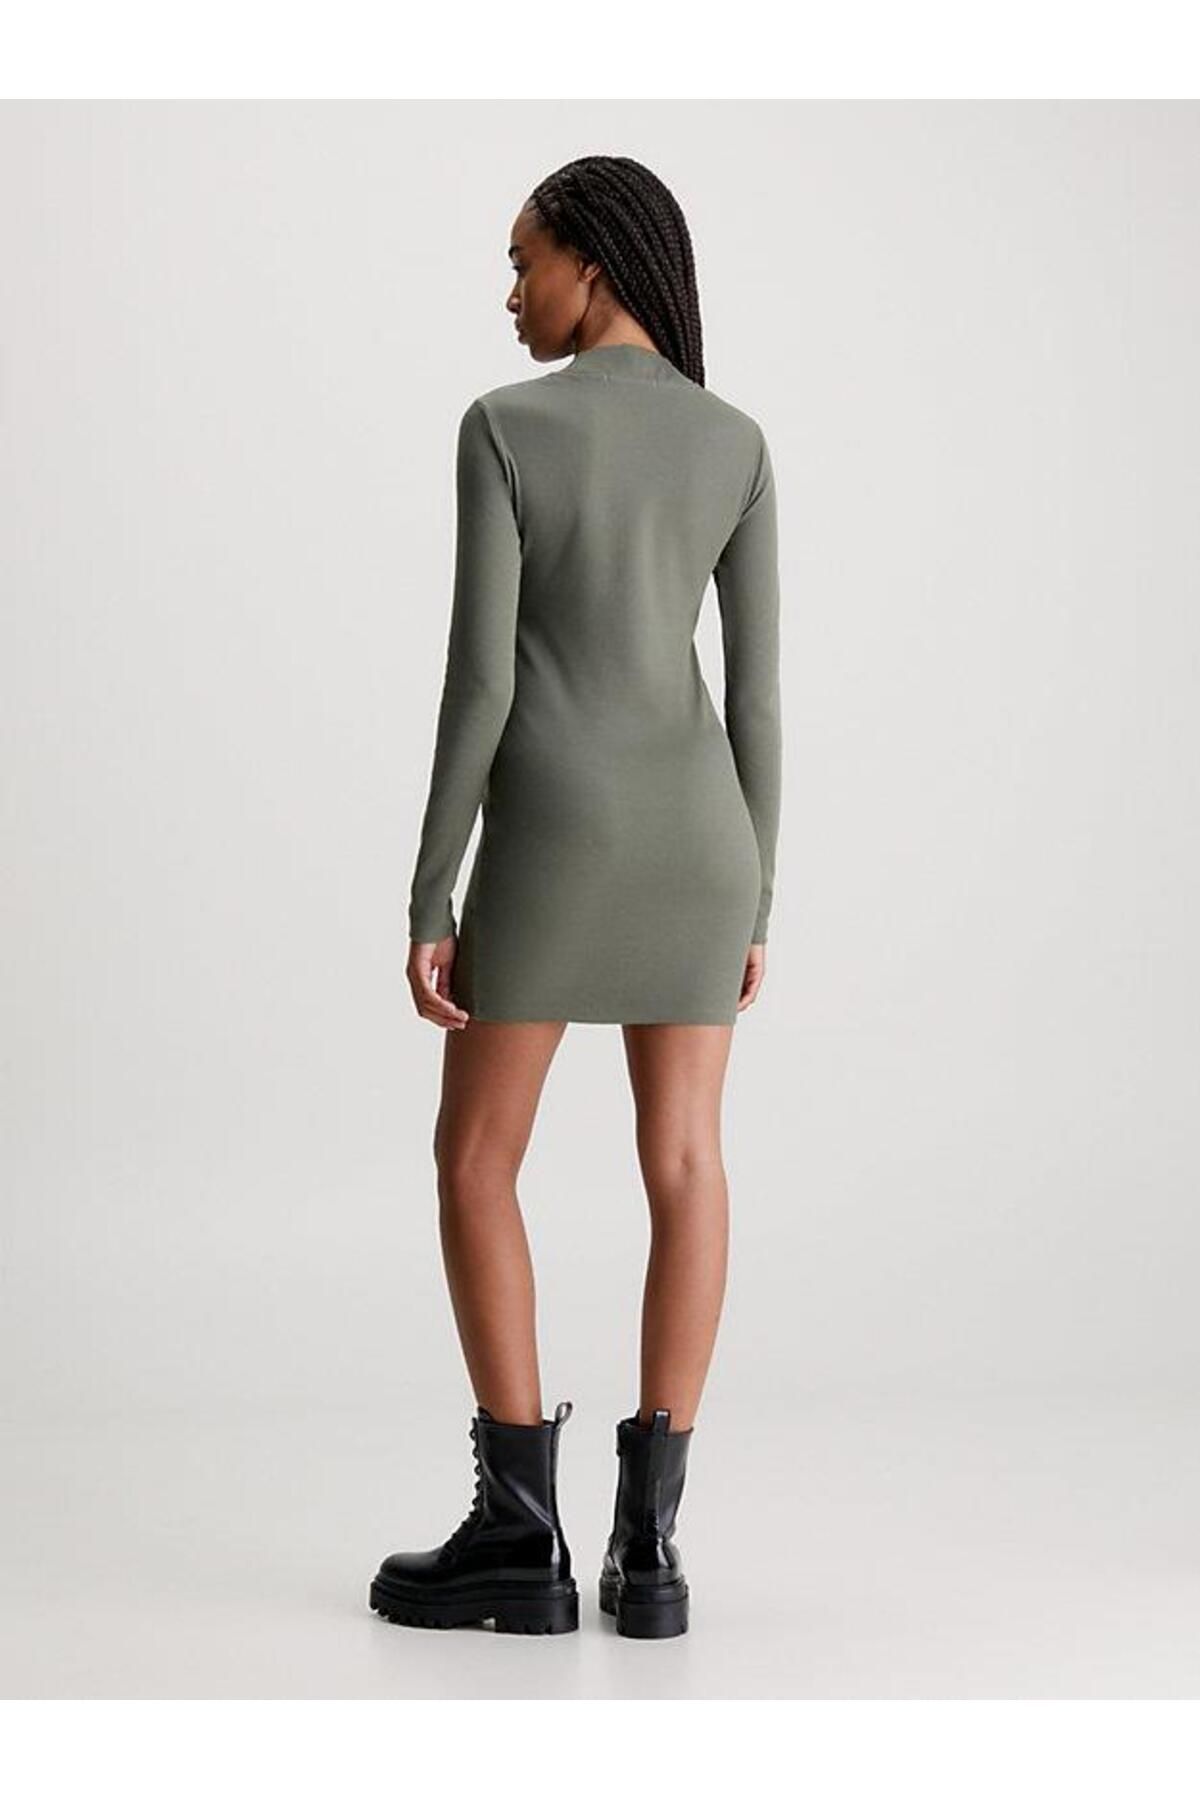 Calvin Klein Woven Label Rıb Ls Dress Fiyatı, Yorumları - Trendyol